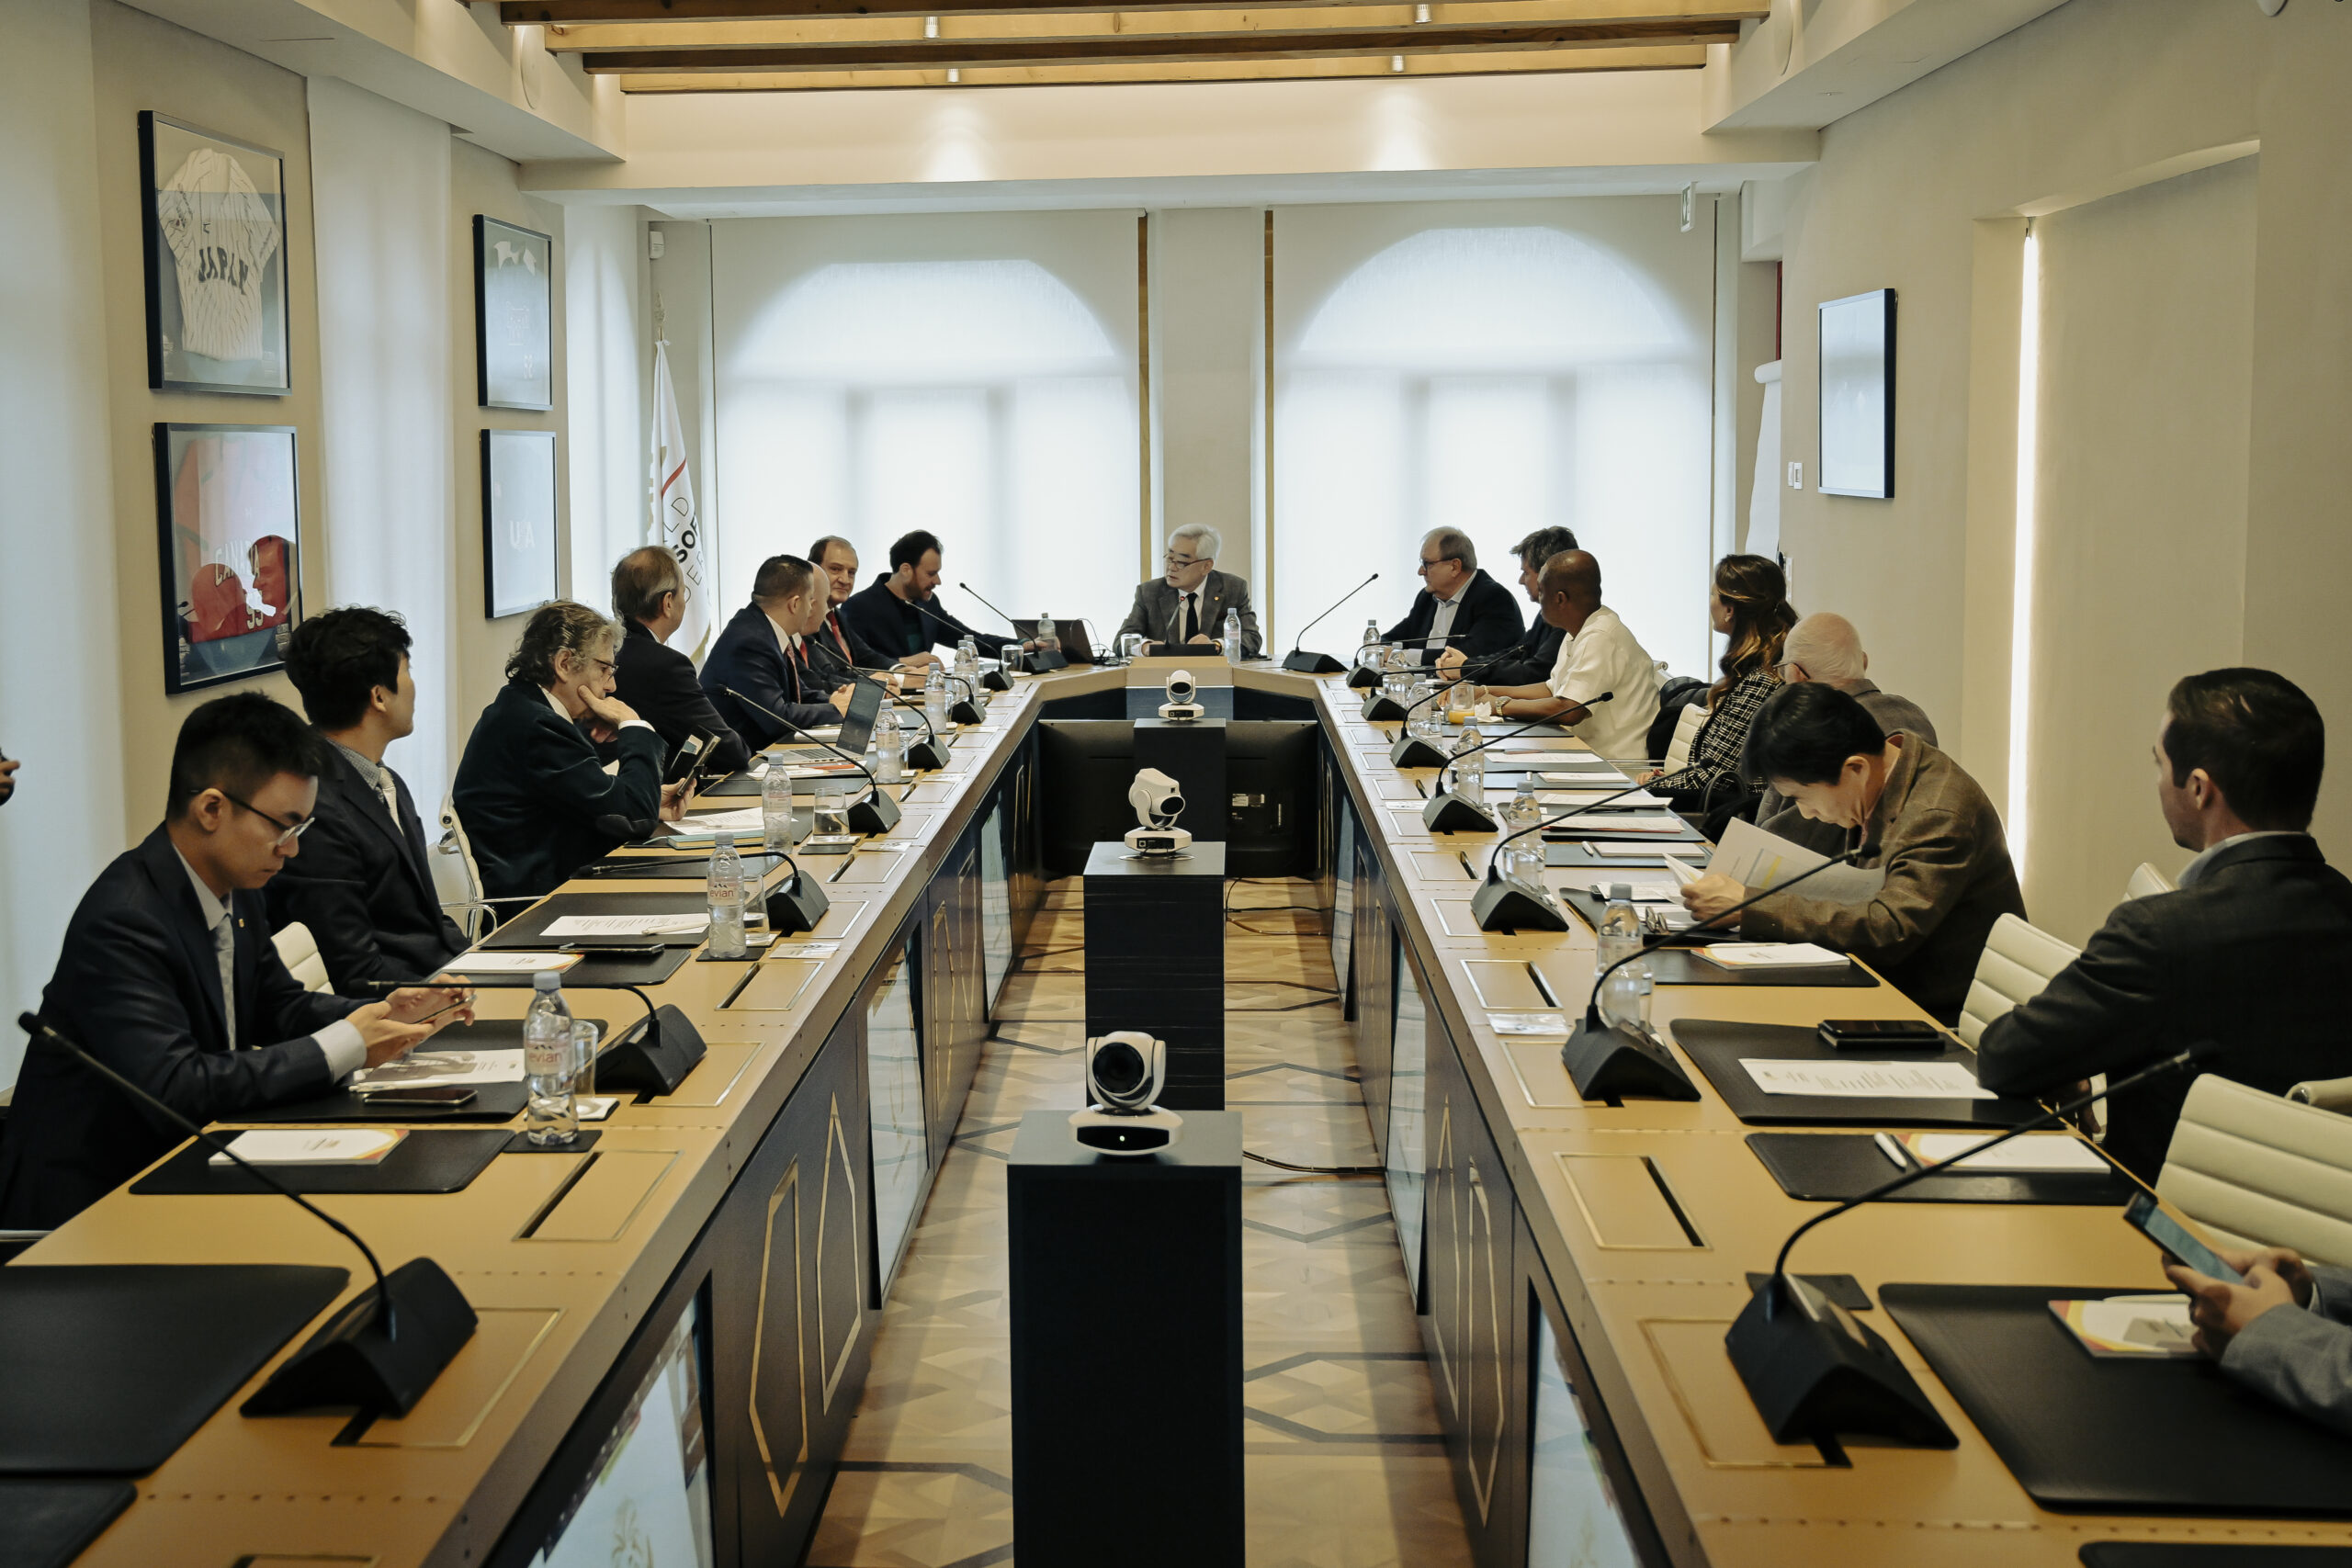 01_THF Board Meeting_Plenum